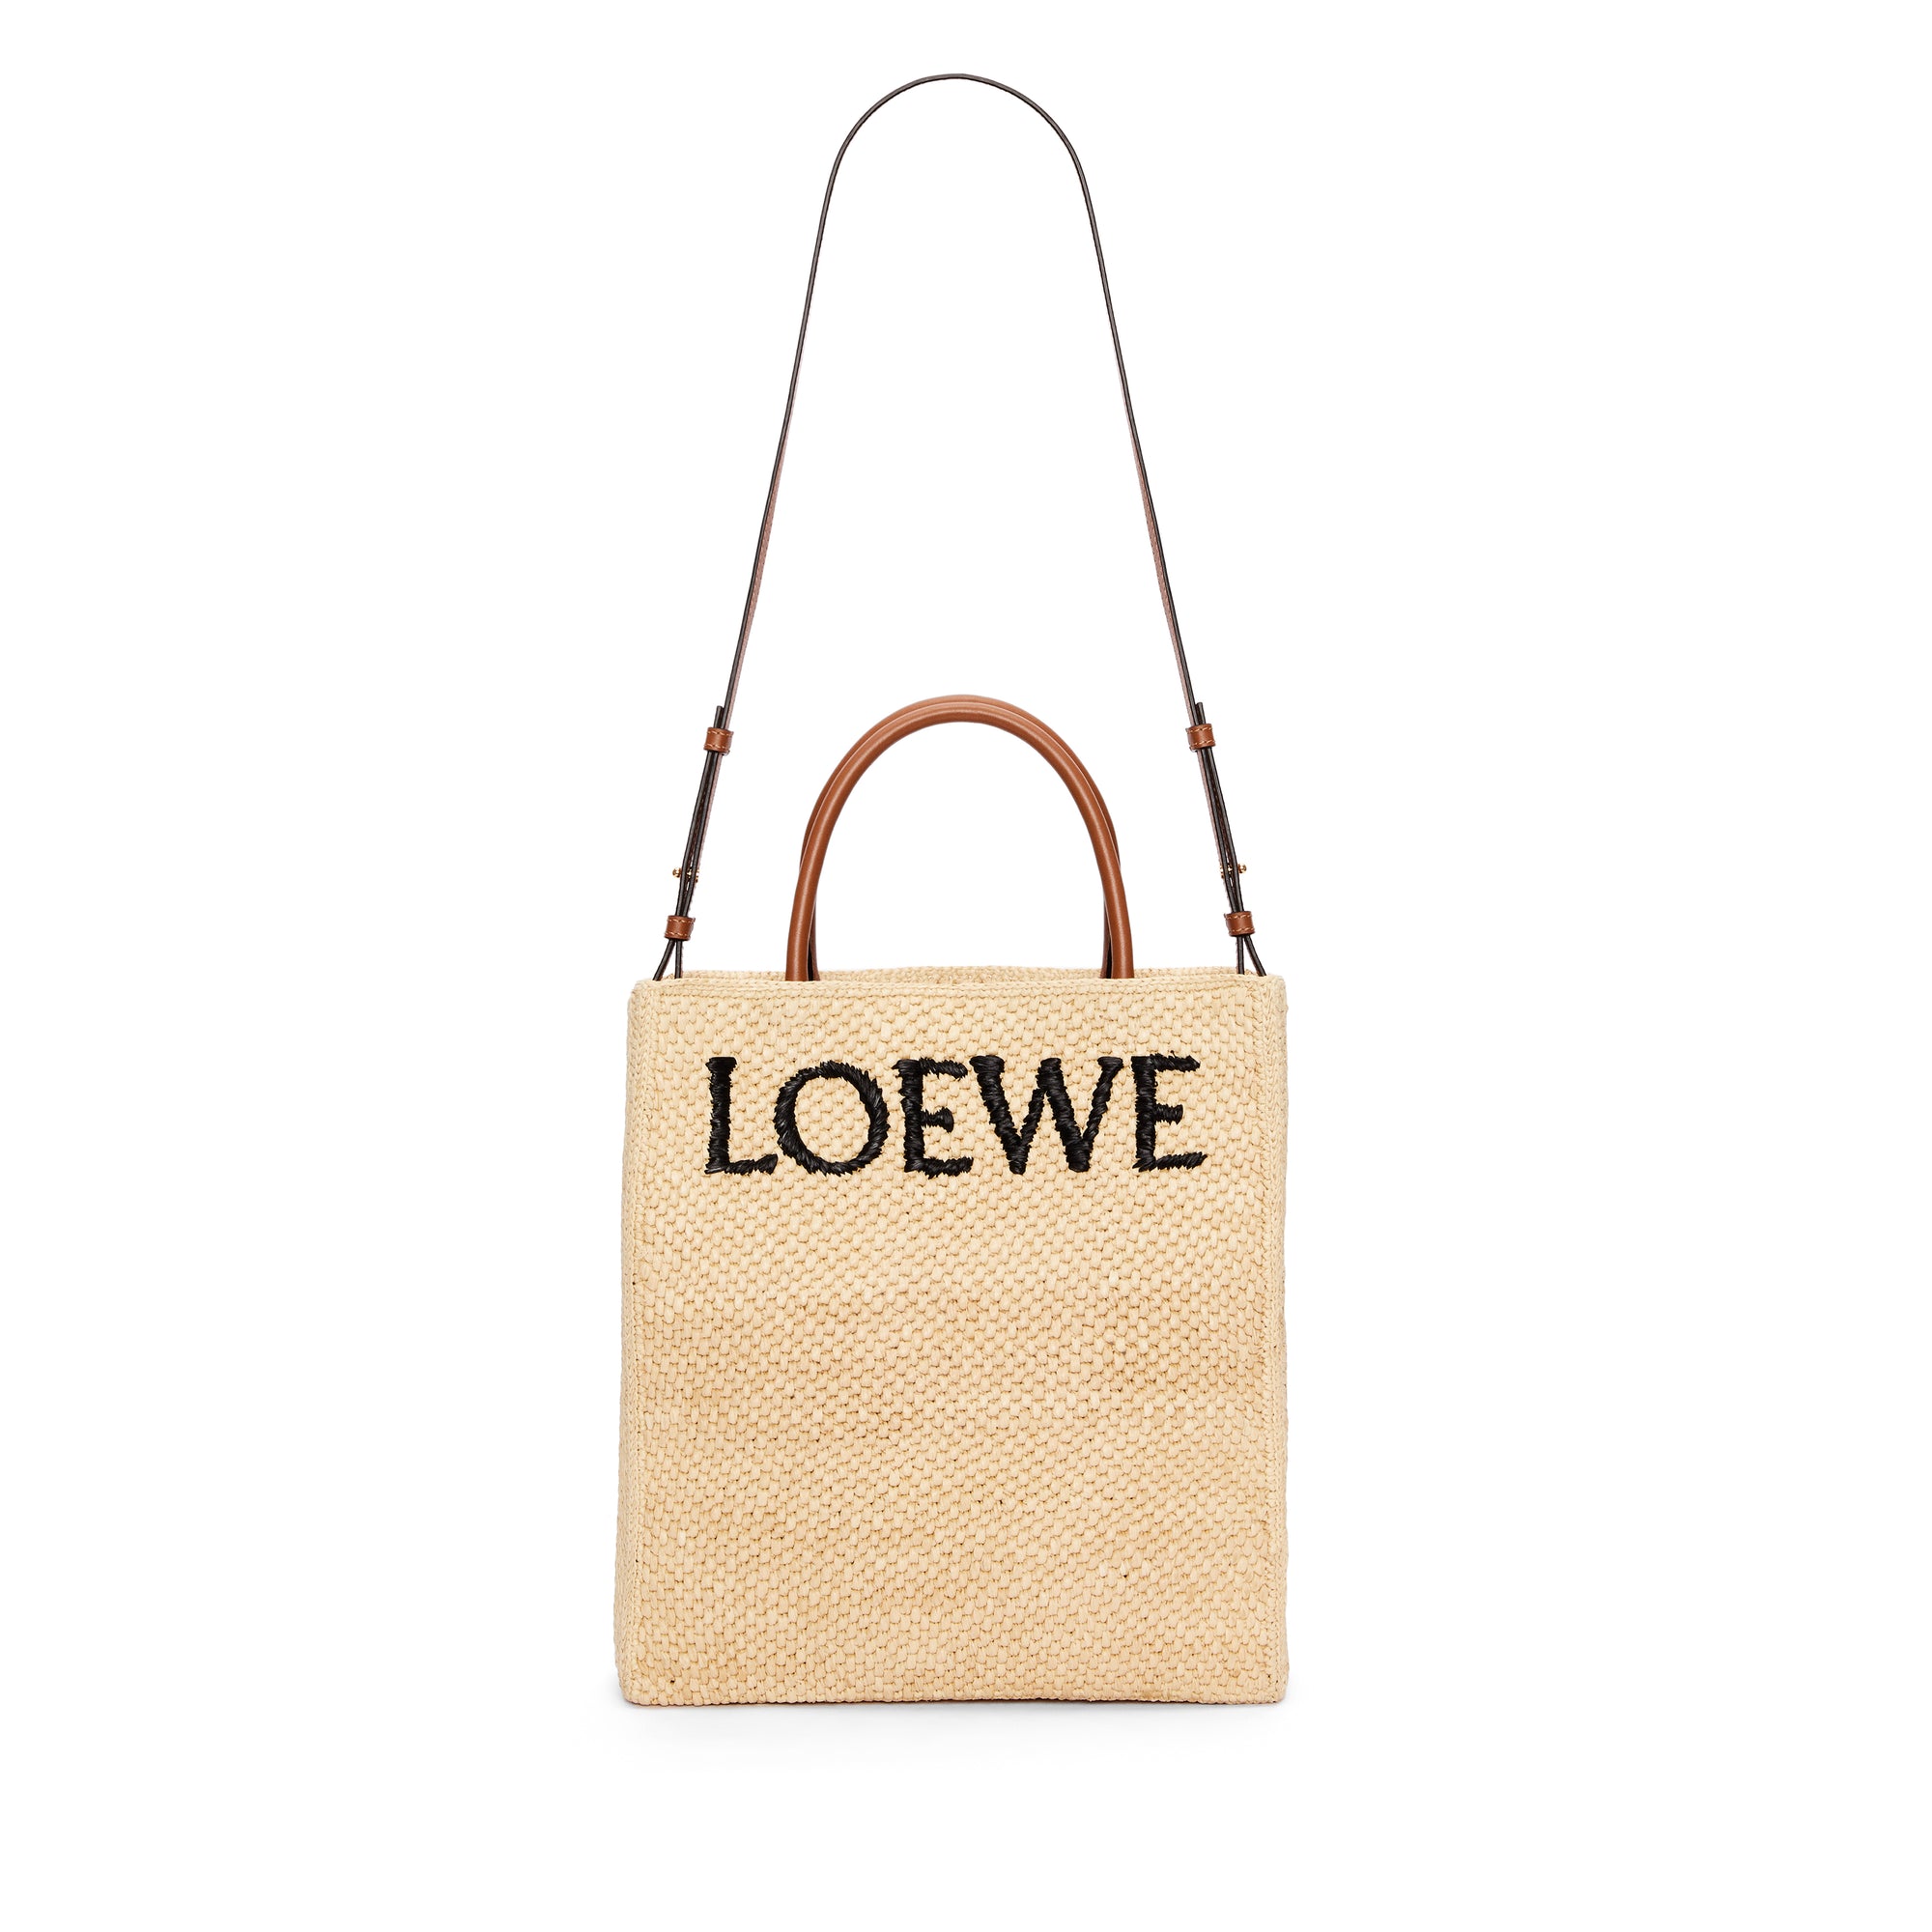 Loewe - Women’s Small Raphia Tote Bag - (Natural/Black) view 2